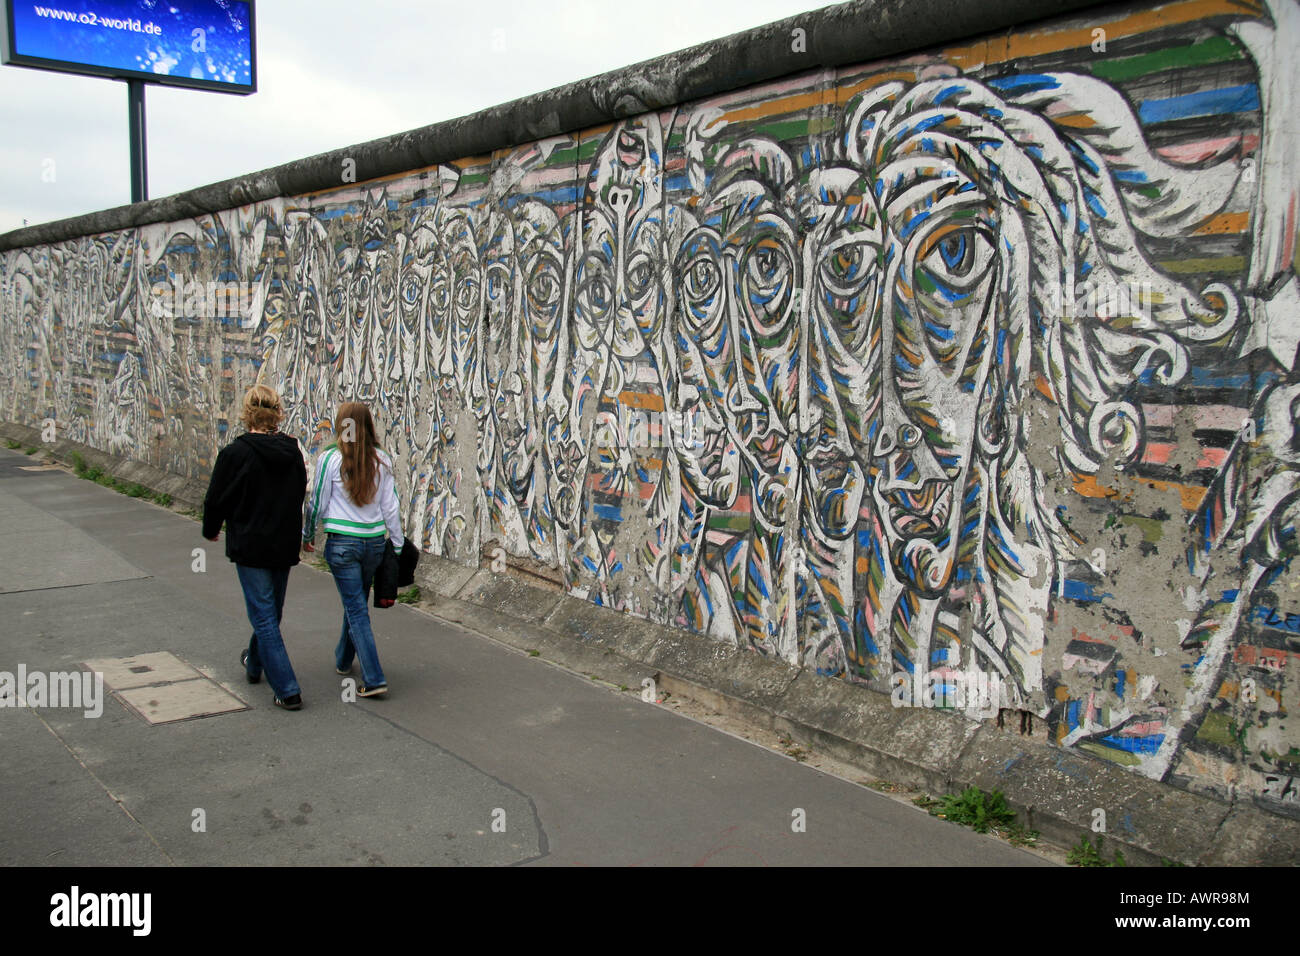 La East Side Gallery, un 1300m, section du mur de Berlin, plein de tableaux, de déclarations politiques et images satiriques. Banque D'Images